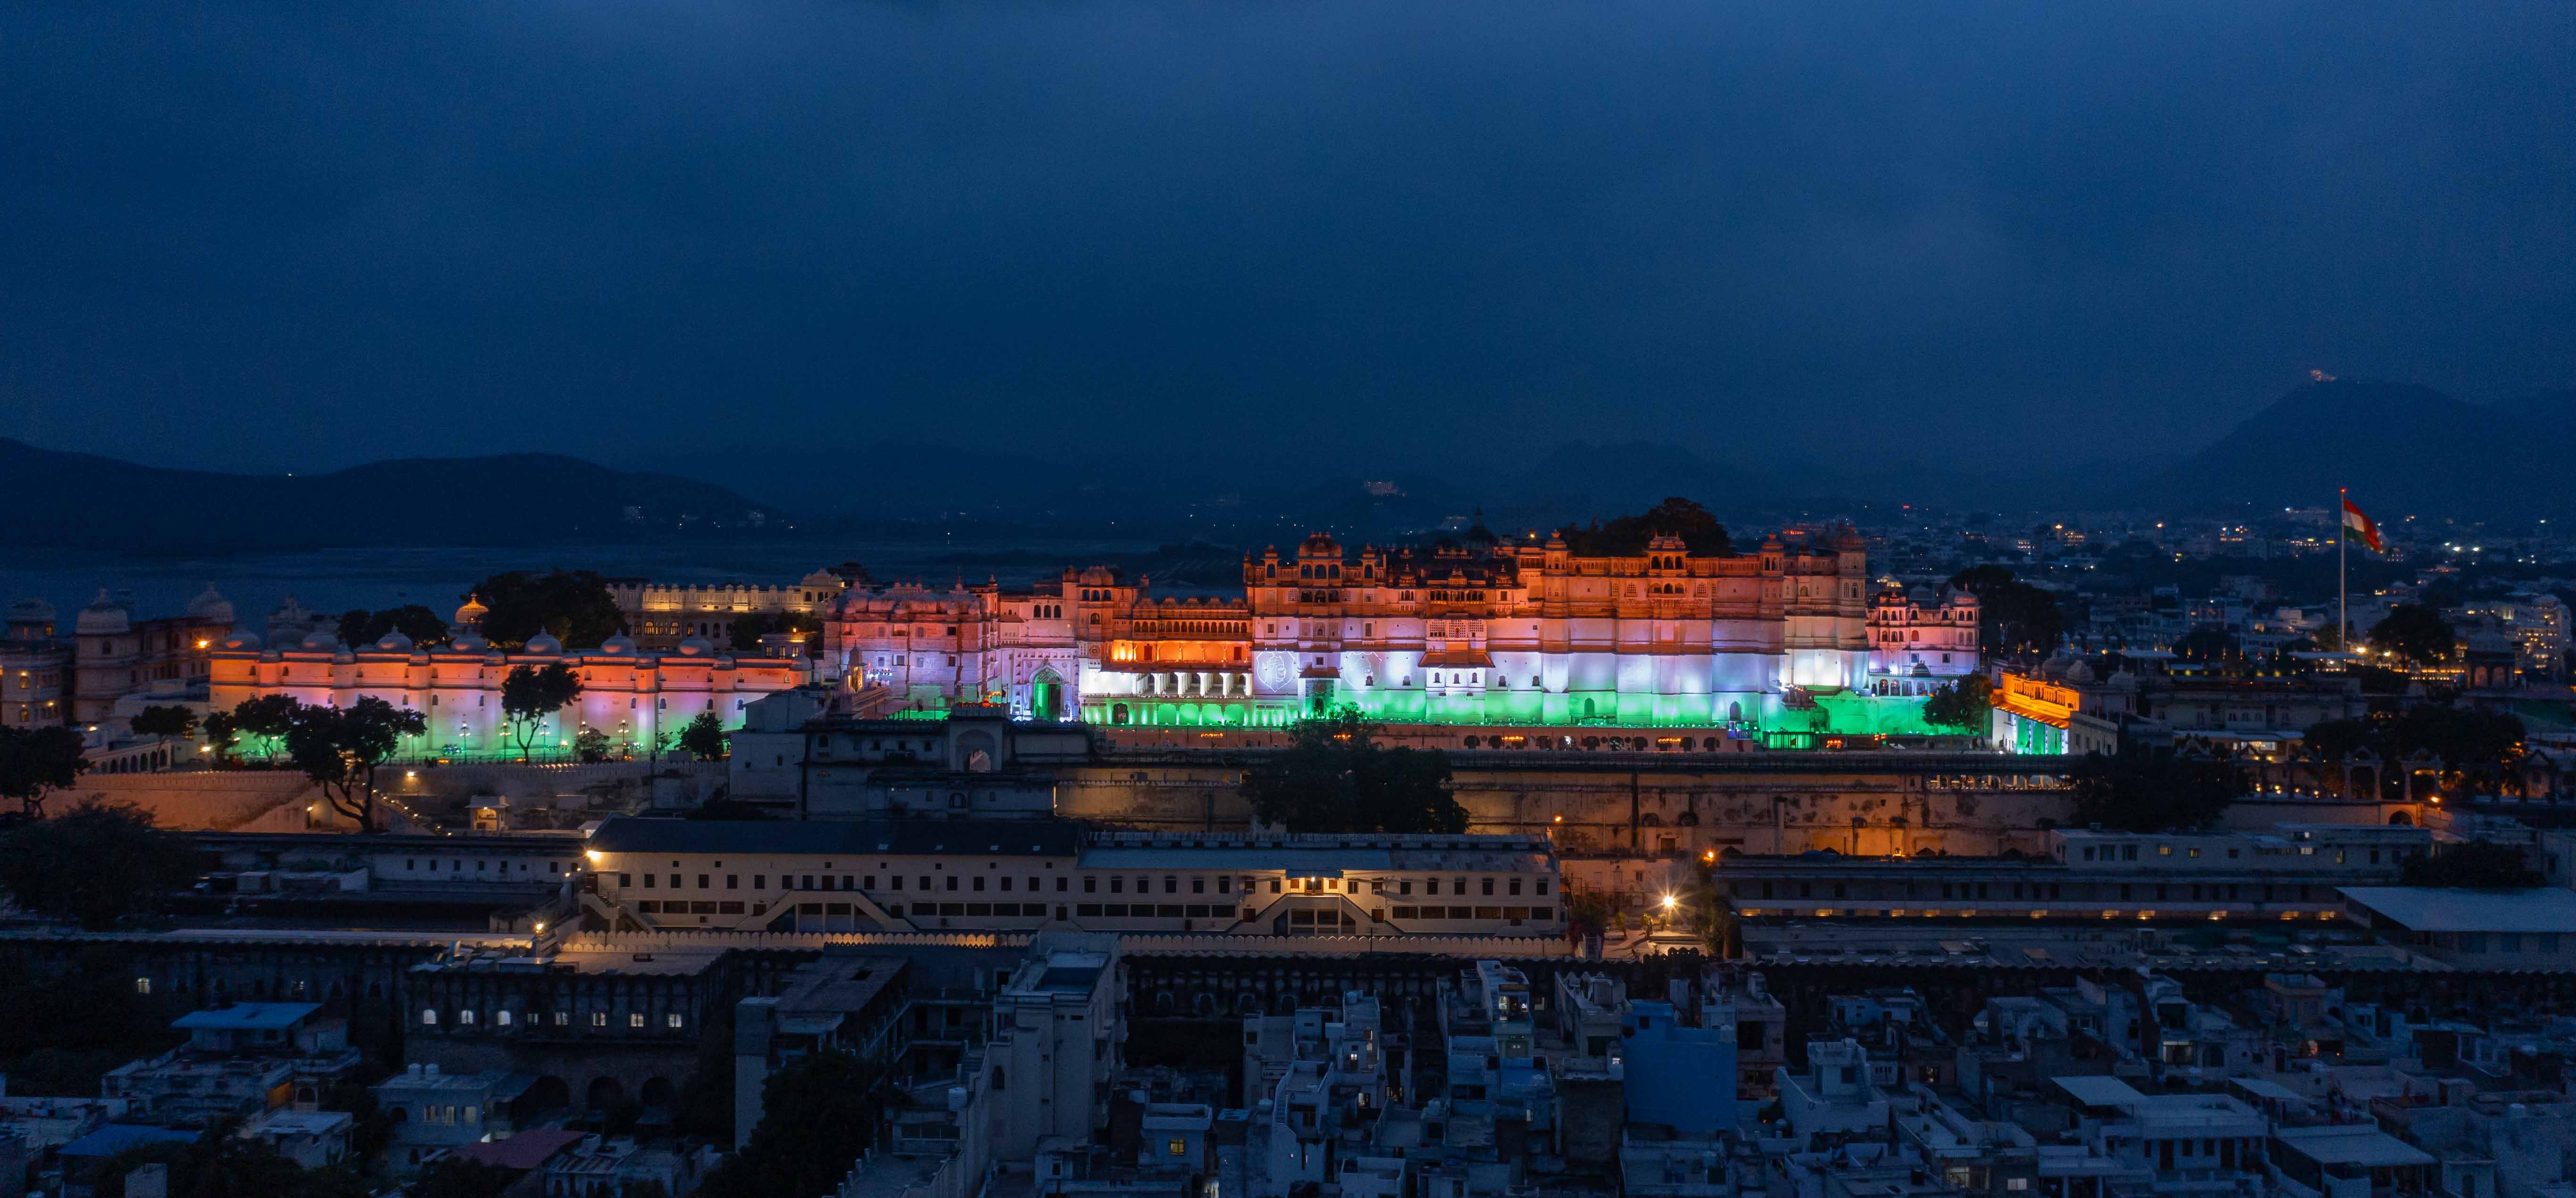 ७७वें स्वतंत्रता दिवस पर तिरंगे प्रकाश से जगमग उदयपुर राजमहल